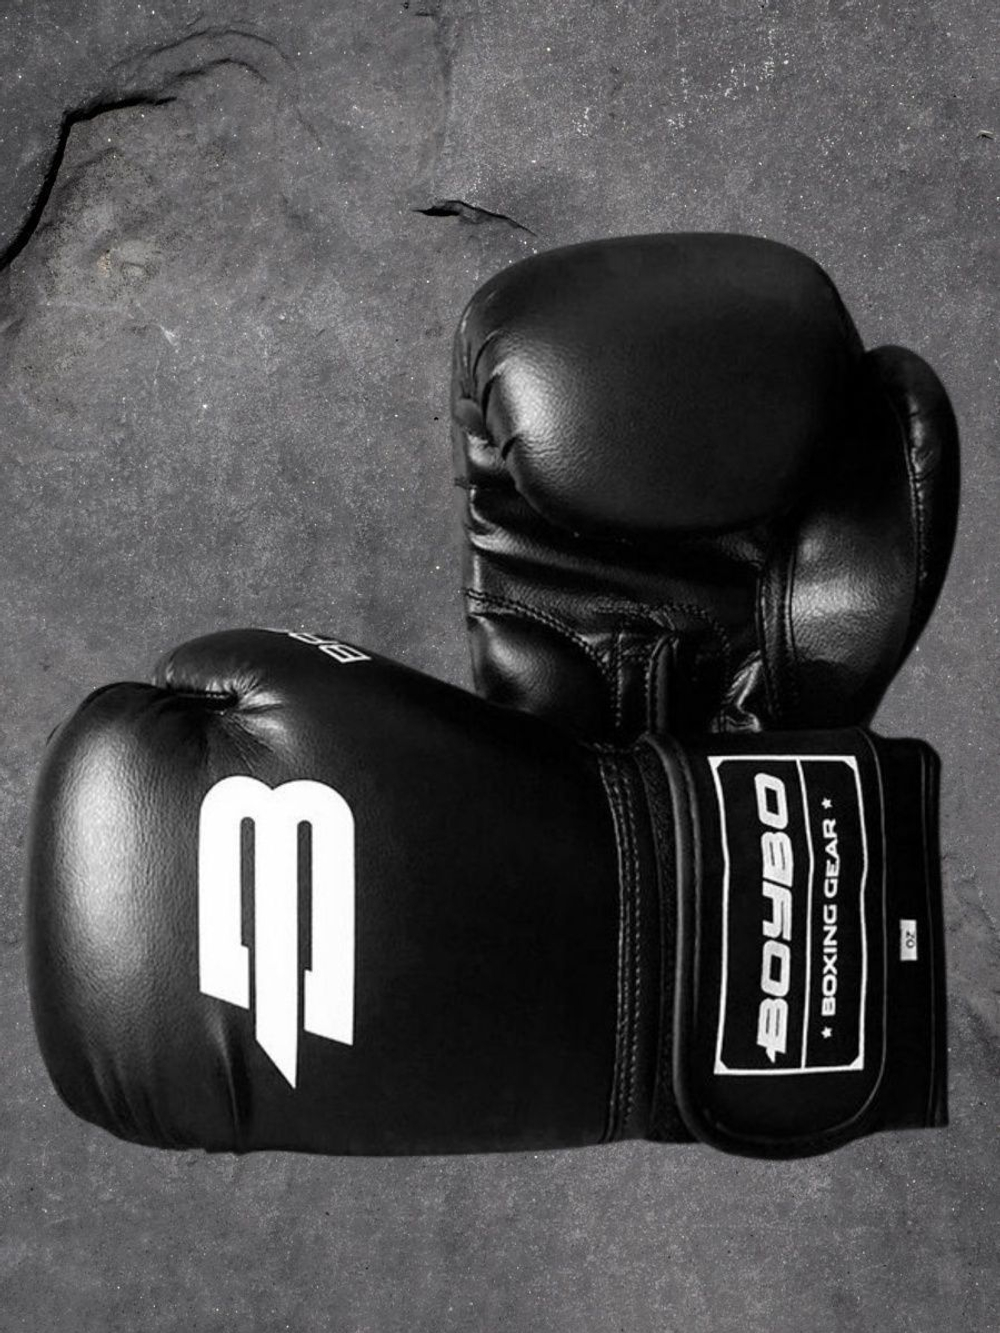 Боксерские перчатки Basic для бокса